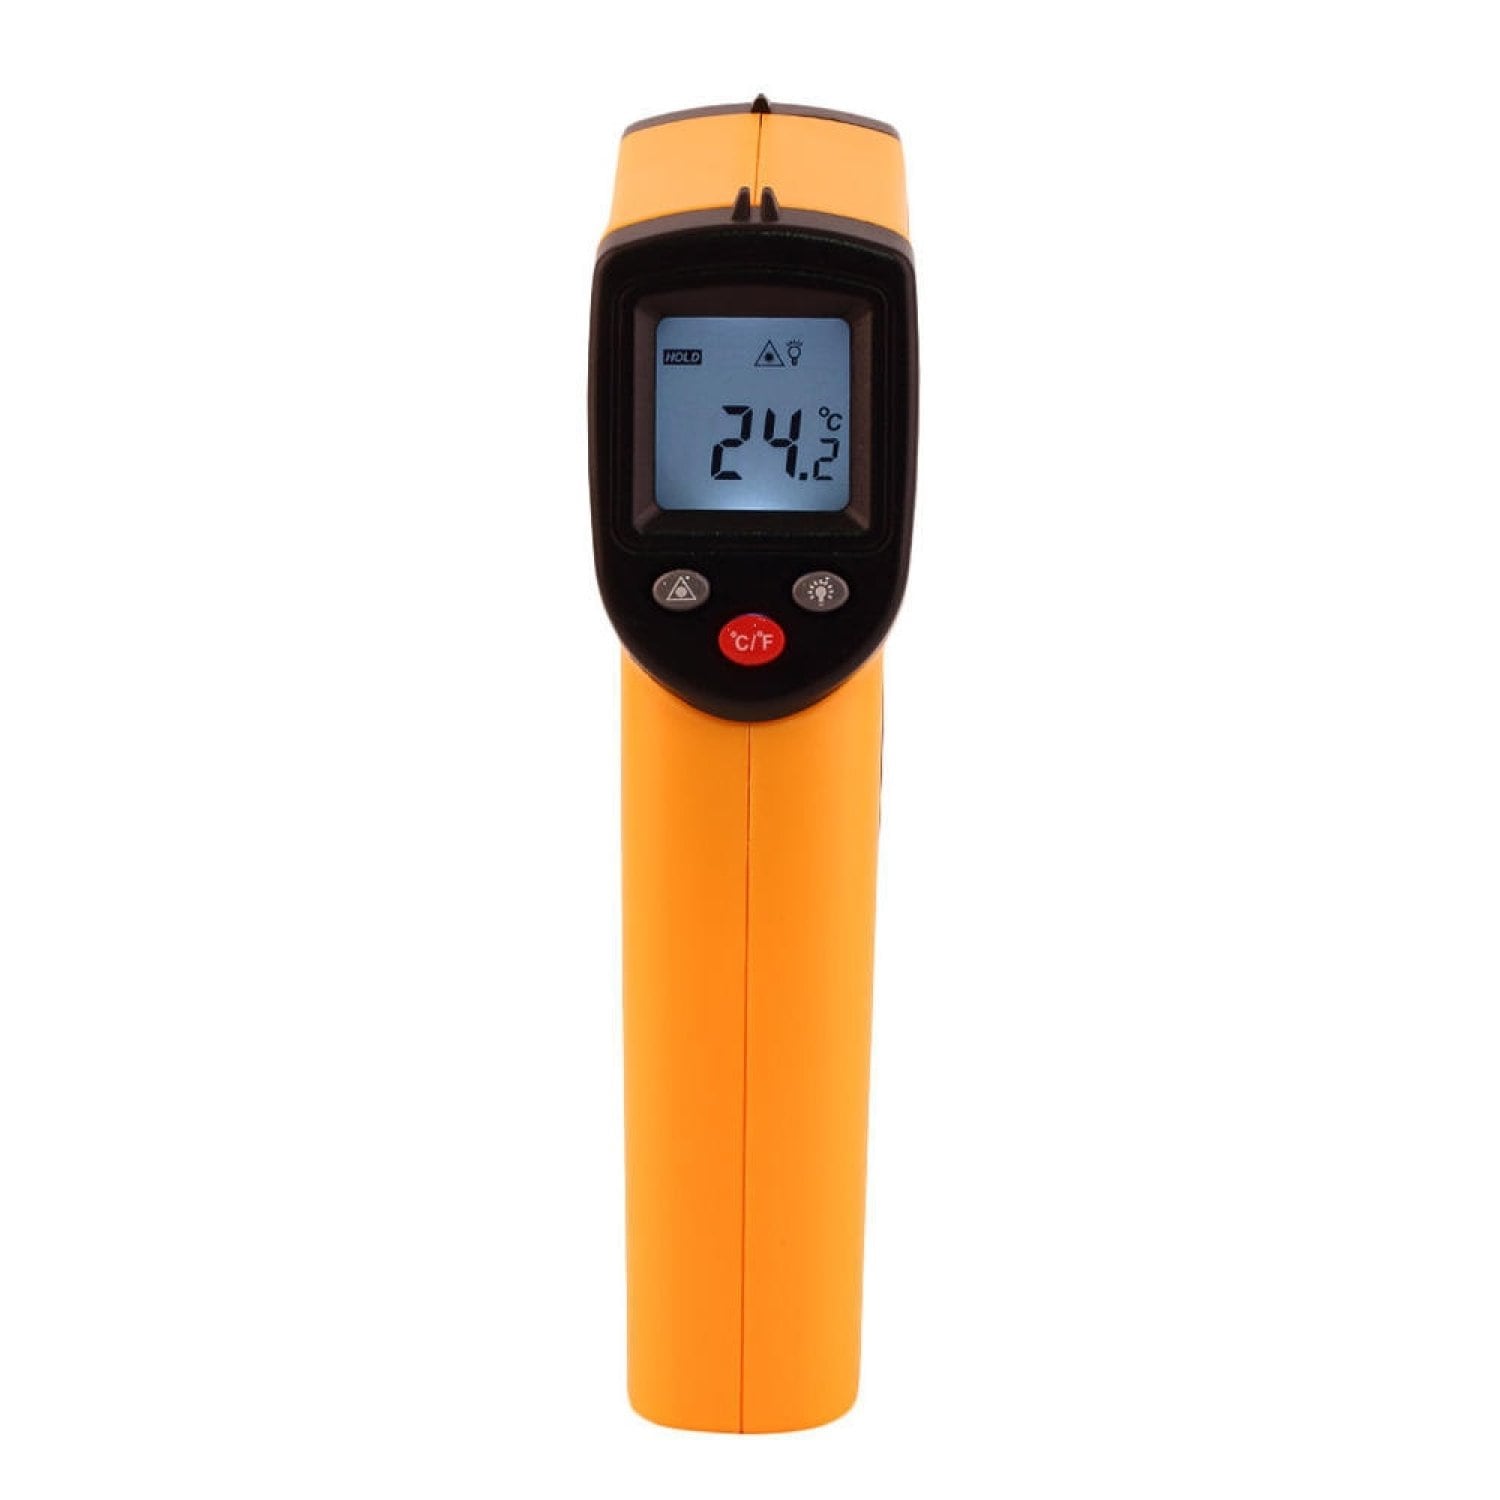 5 ошибок при измерении температуры пирометром - как правильно применять бесконтактный термометр.